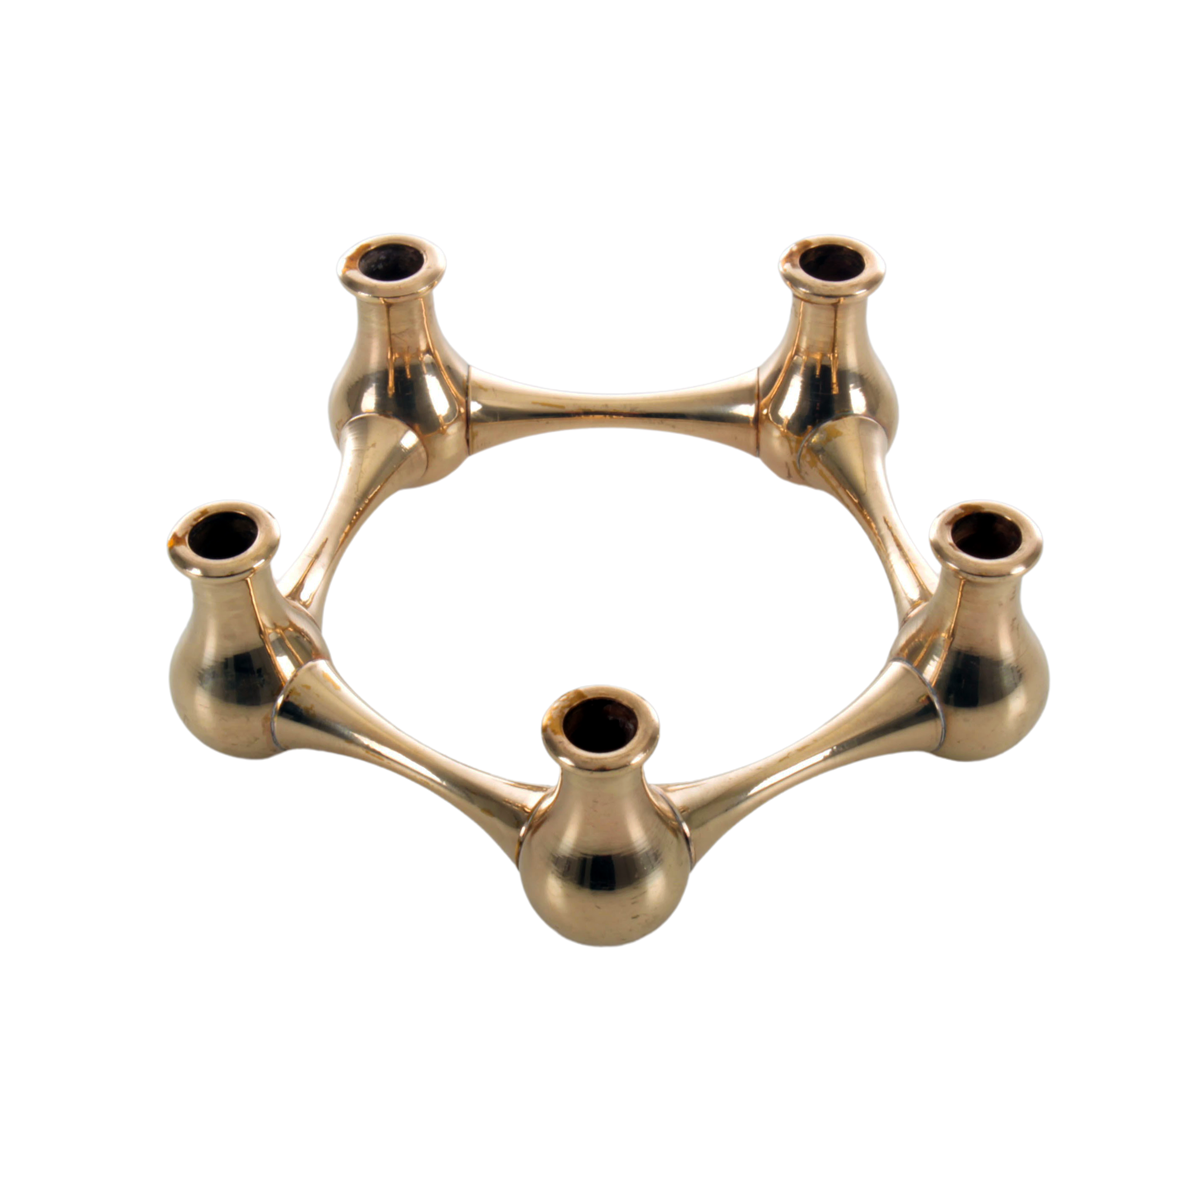 DANSK DESIGNS - Brass ring (5) 